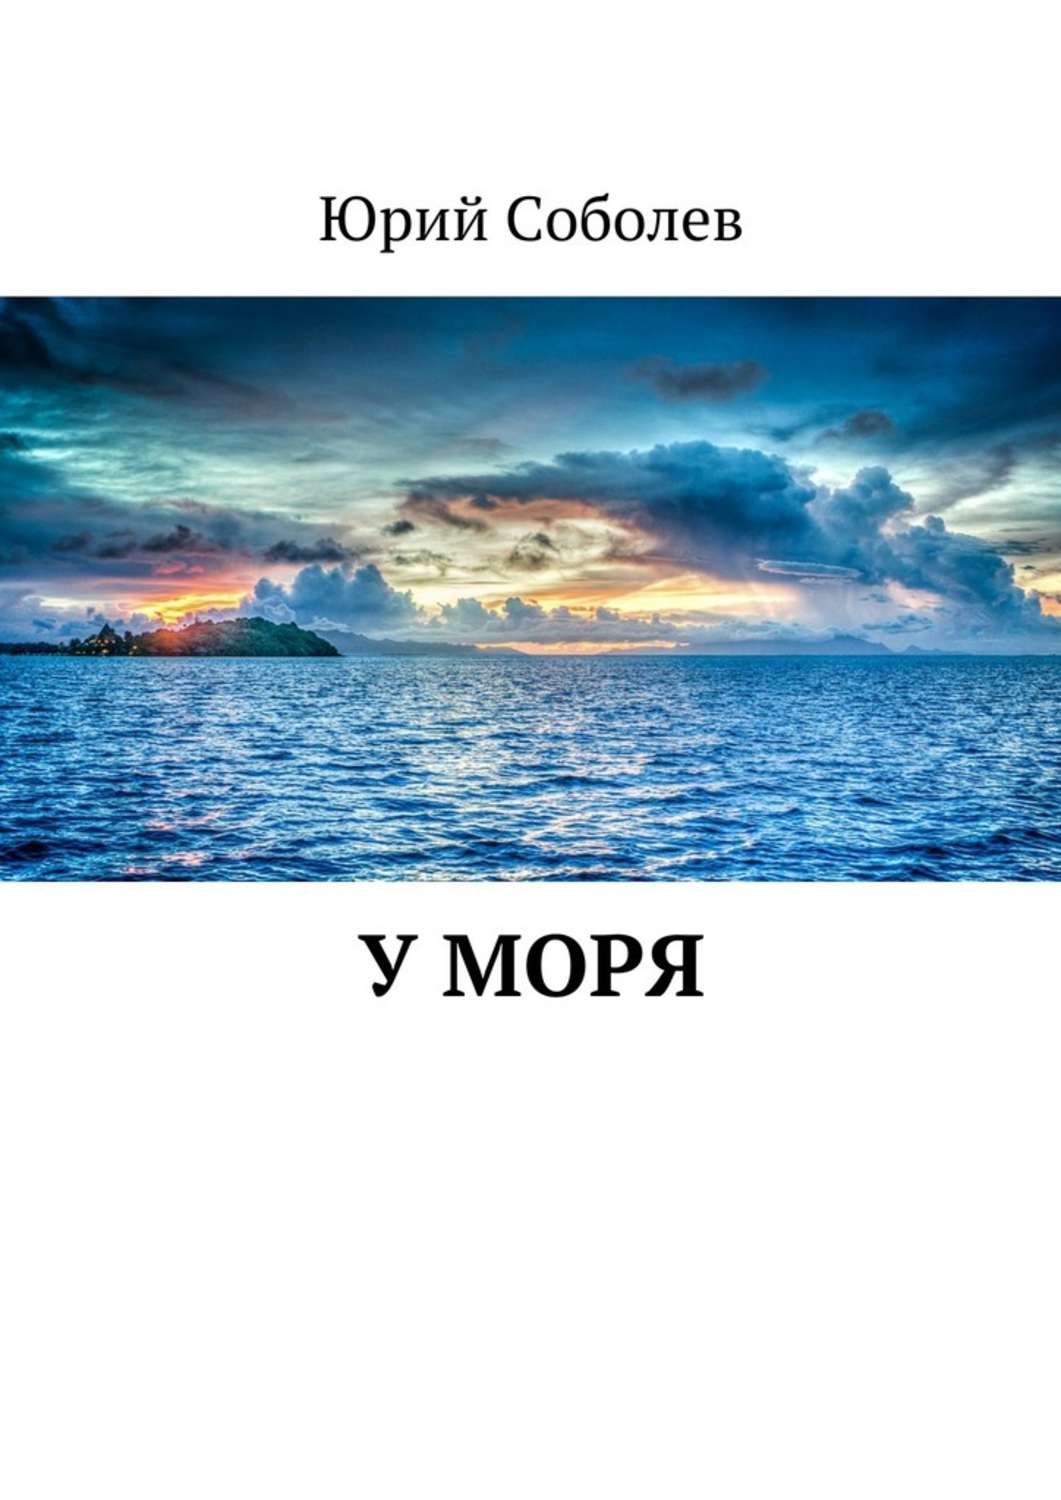 Книга море